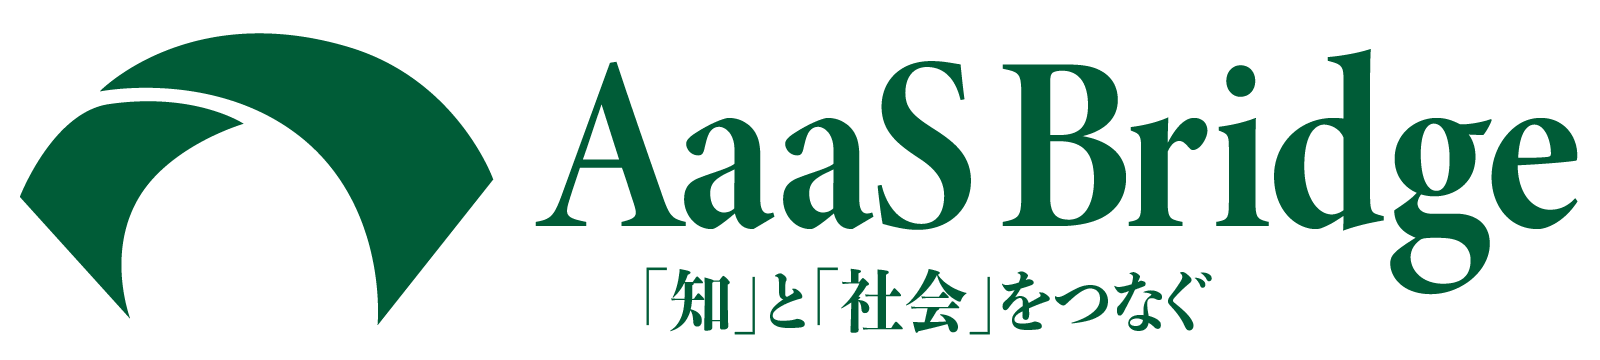 株式会社AaaS Bridge